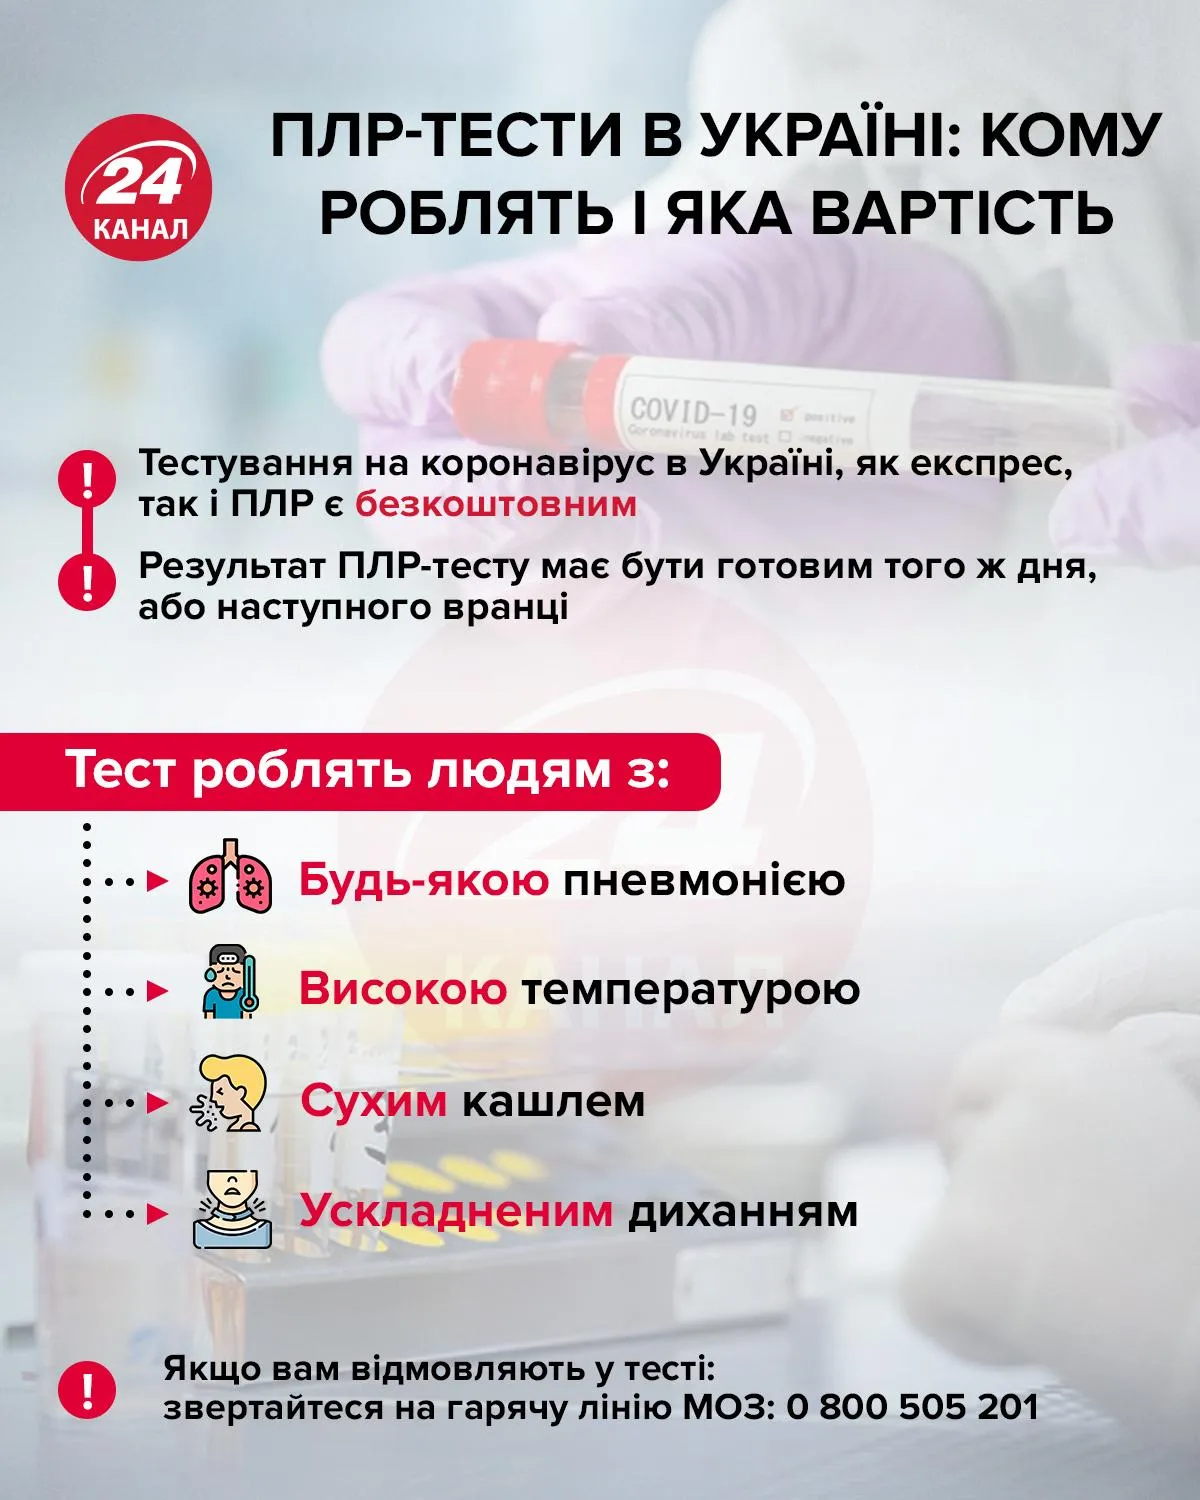 ПЛР-тести в Україні інфографіка 24 канал